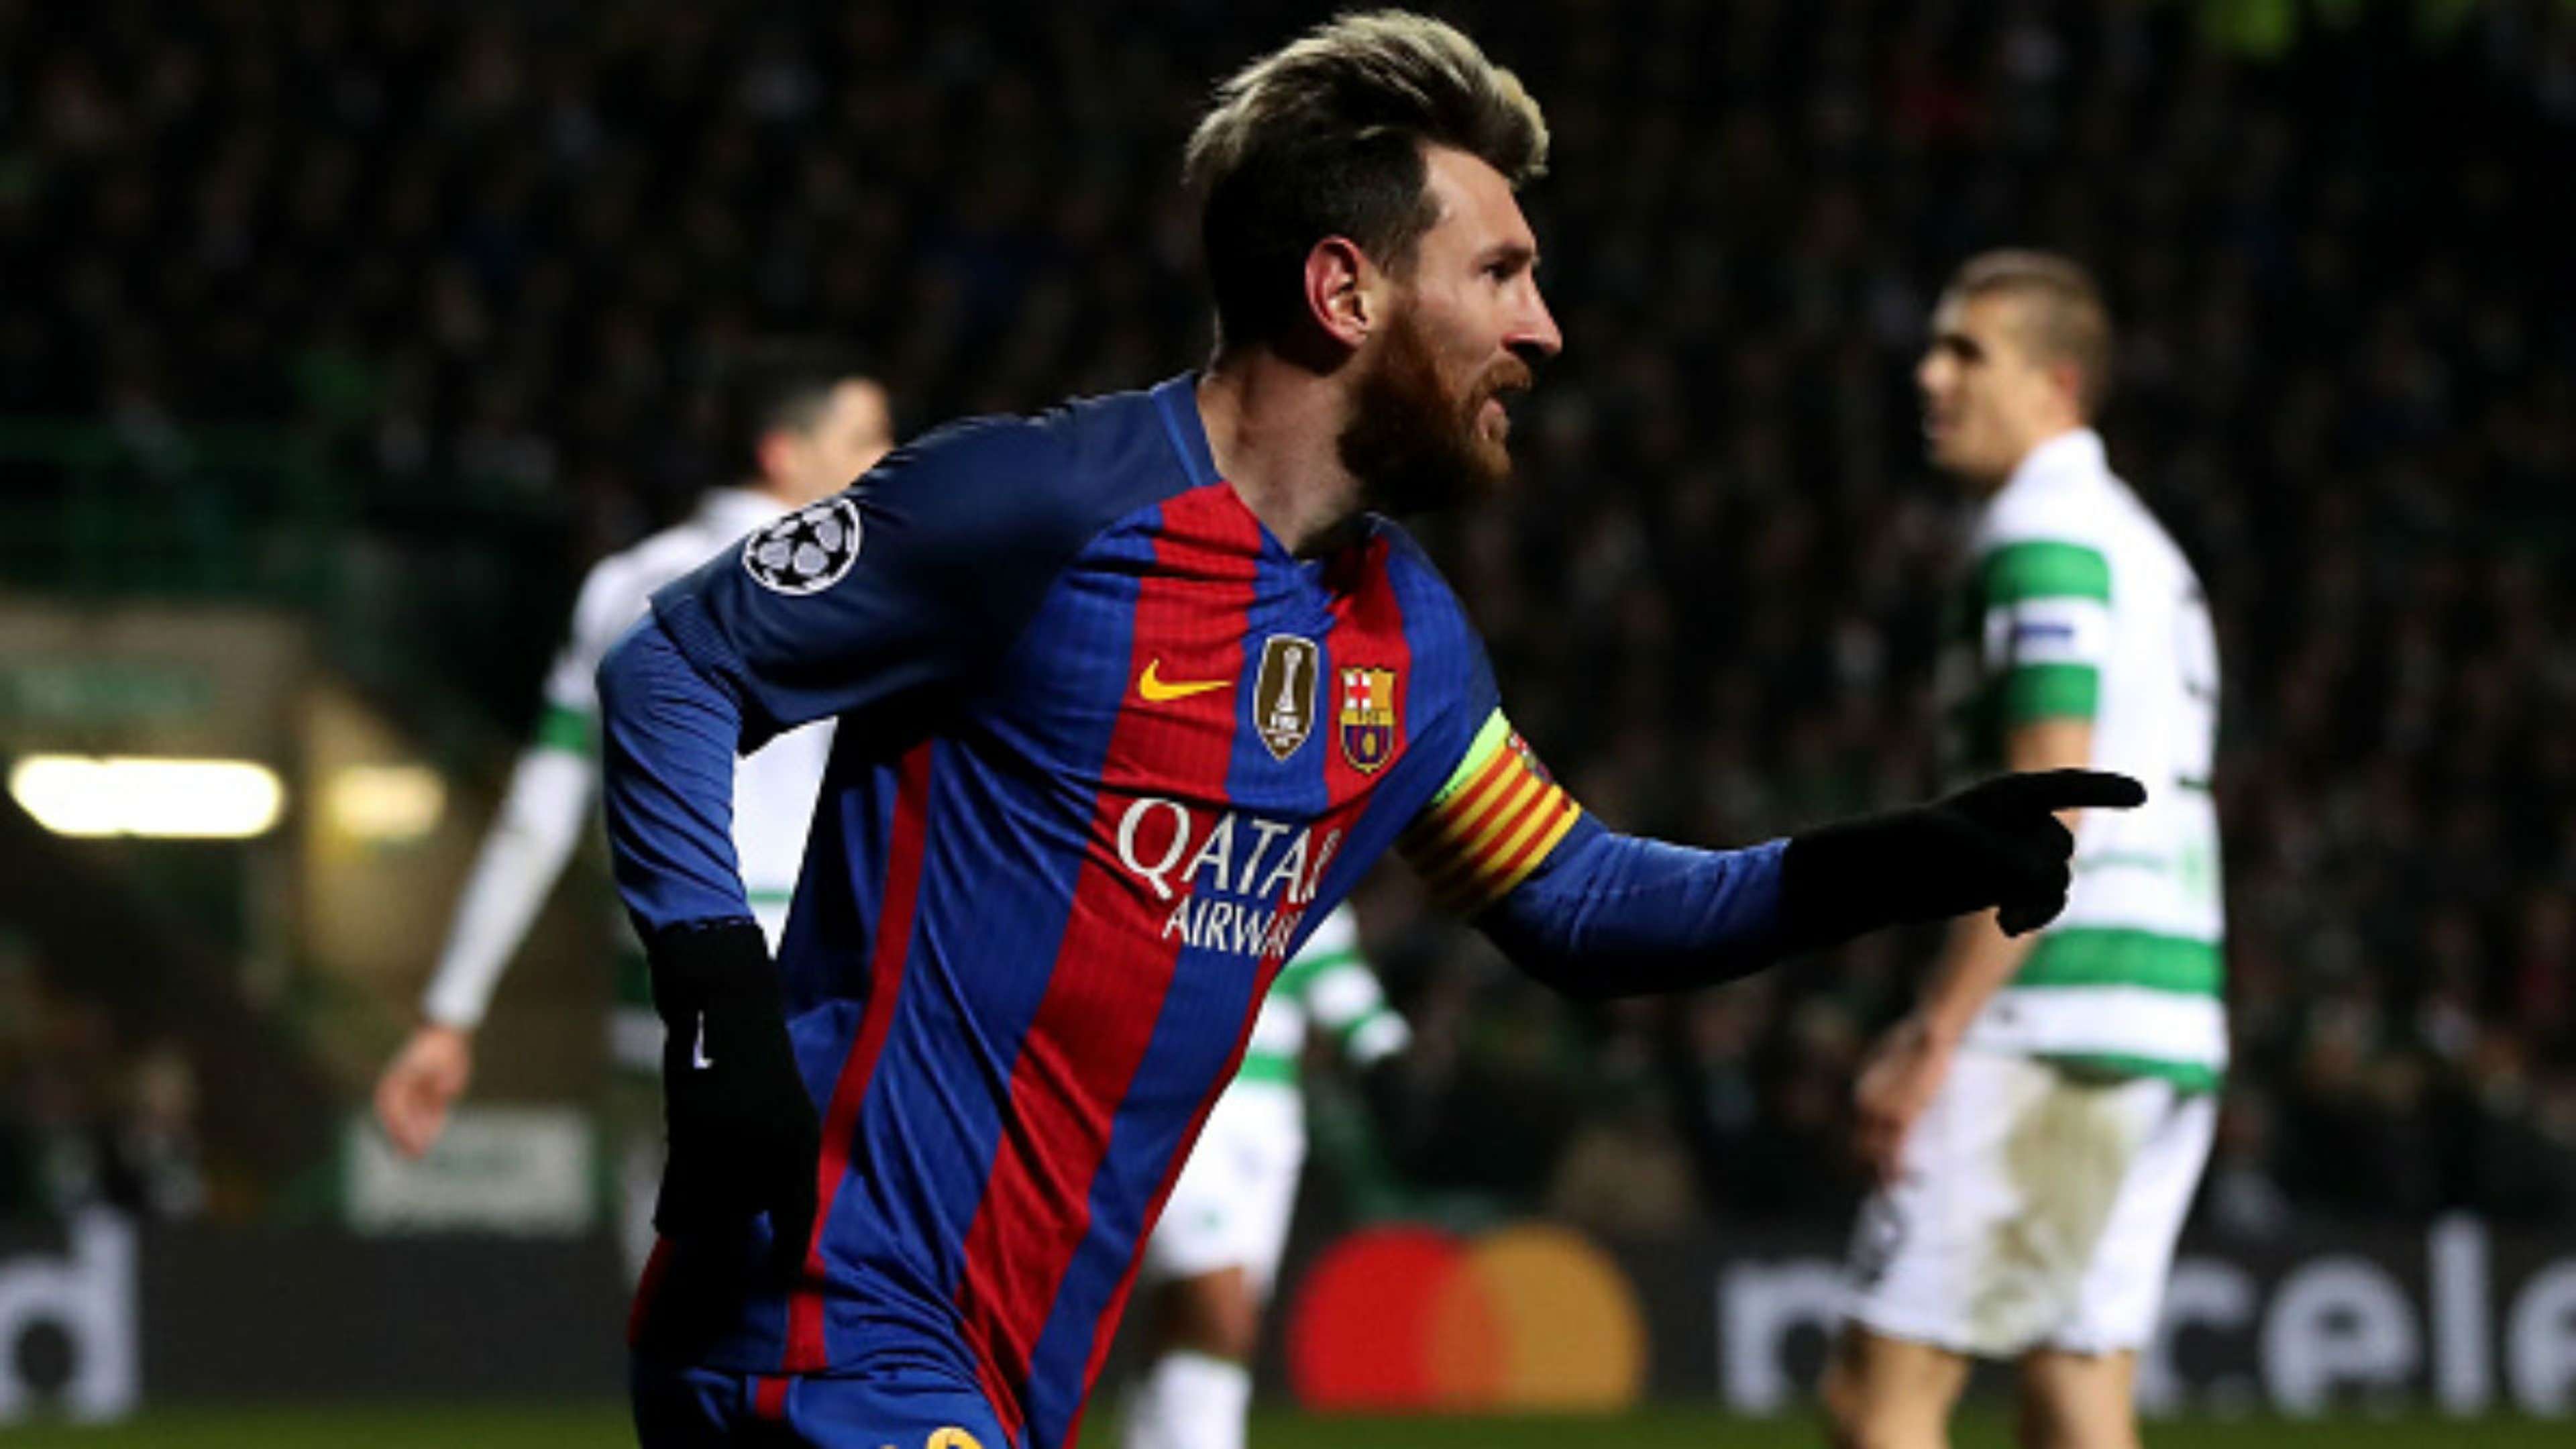 Celtic Barcelona Champions League Fase de Grupos 2016/2017 Lionel Messi